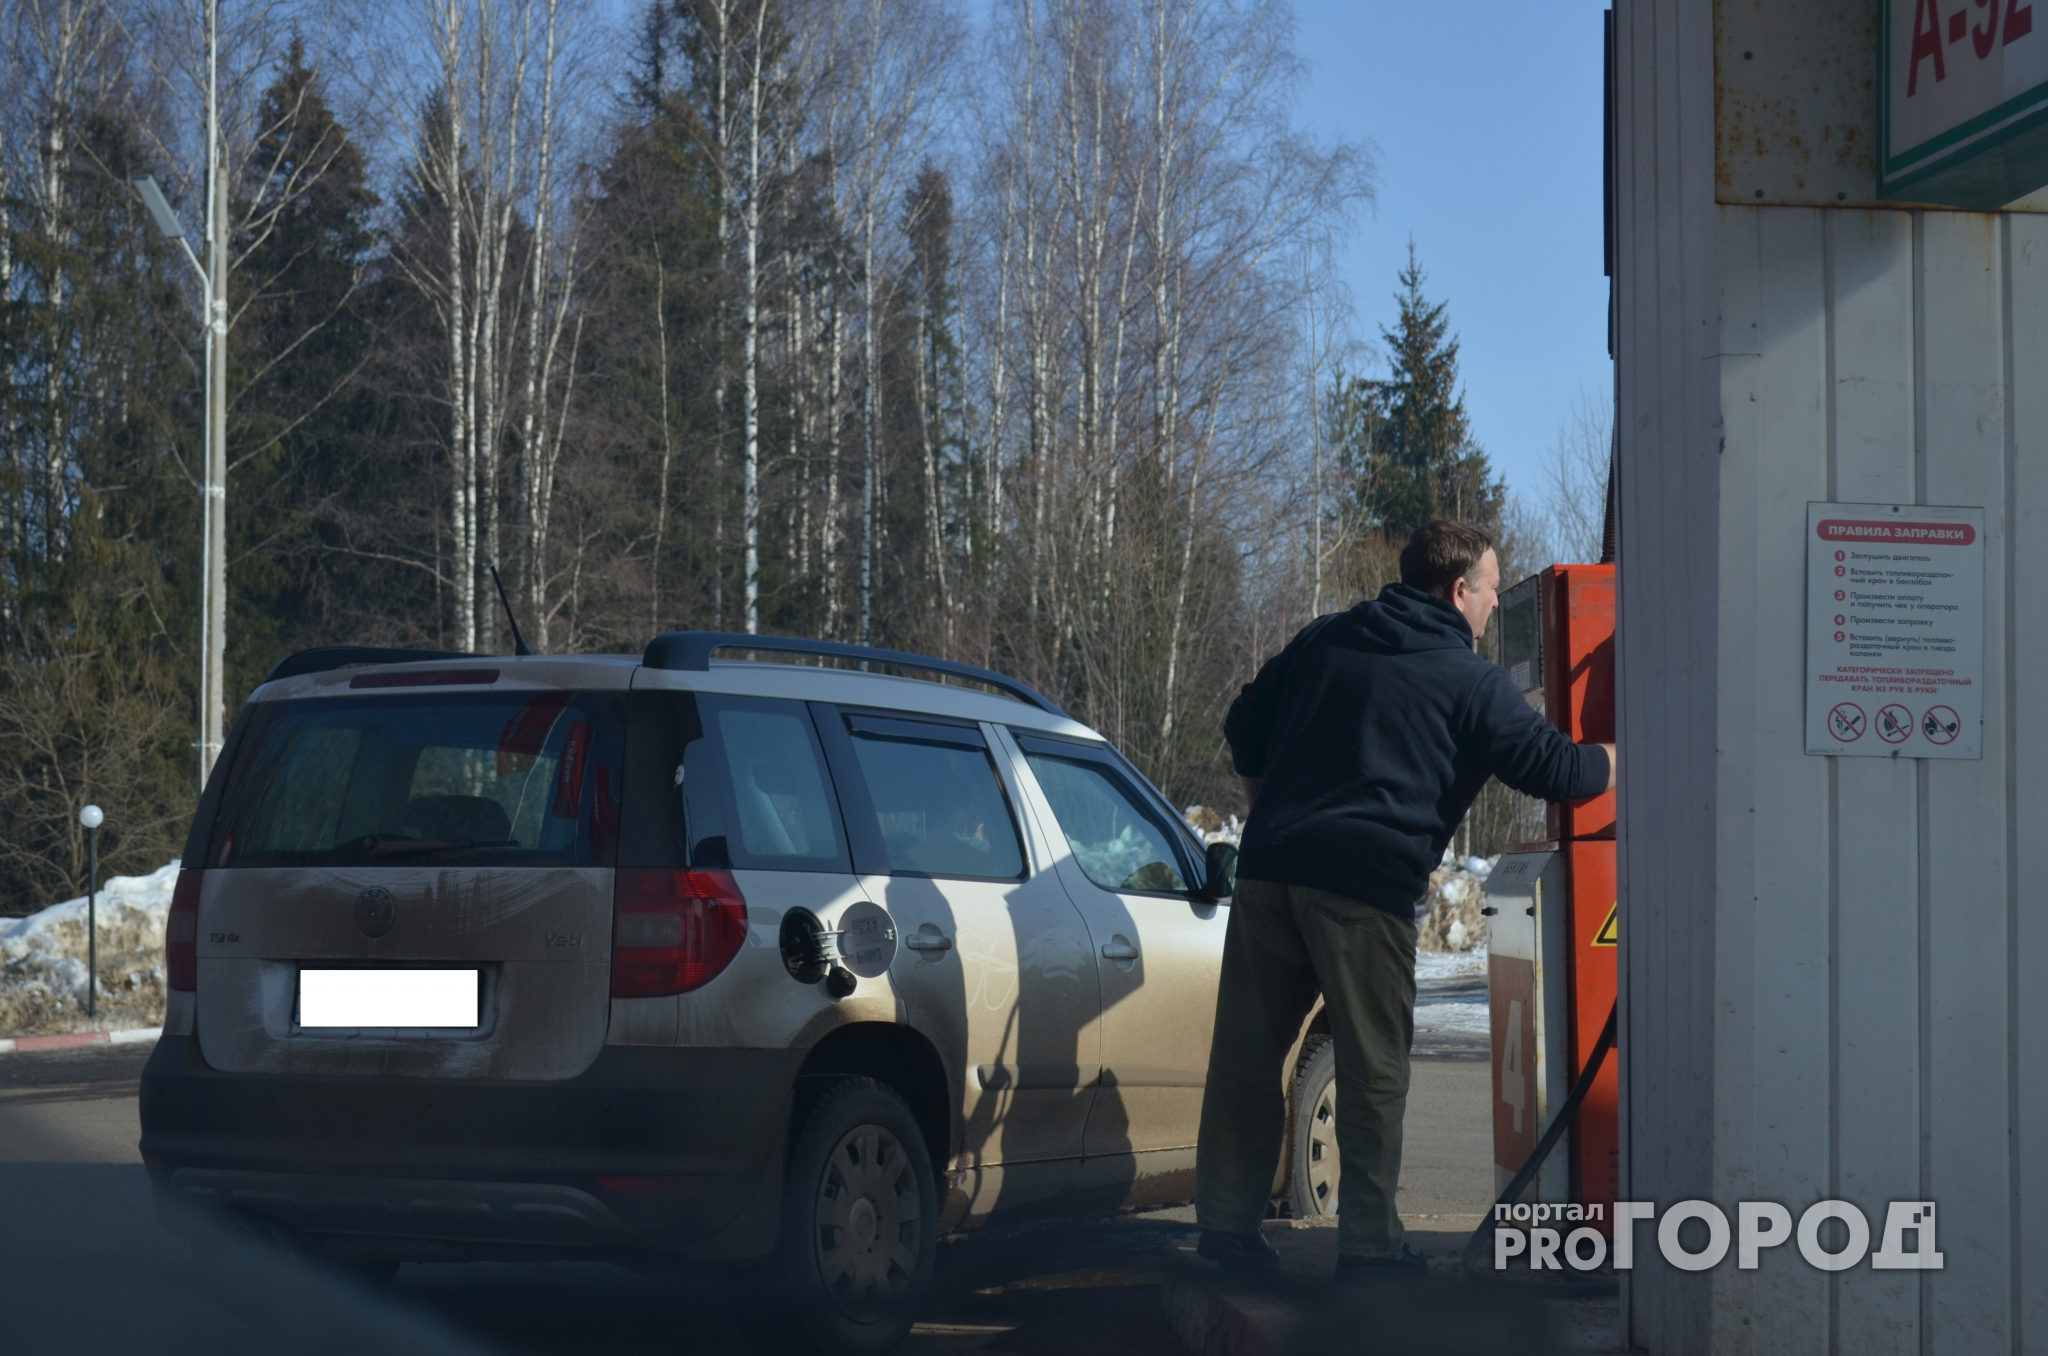 Нижегородским водителям запретят парковаться у автозаправок